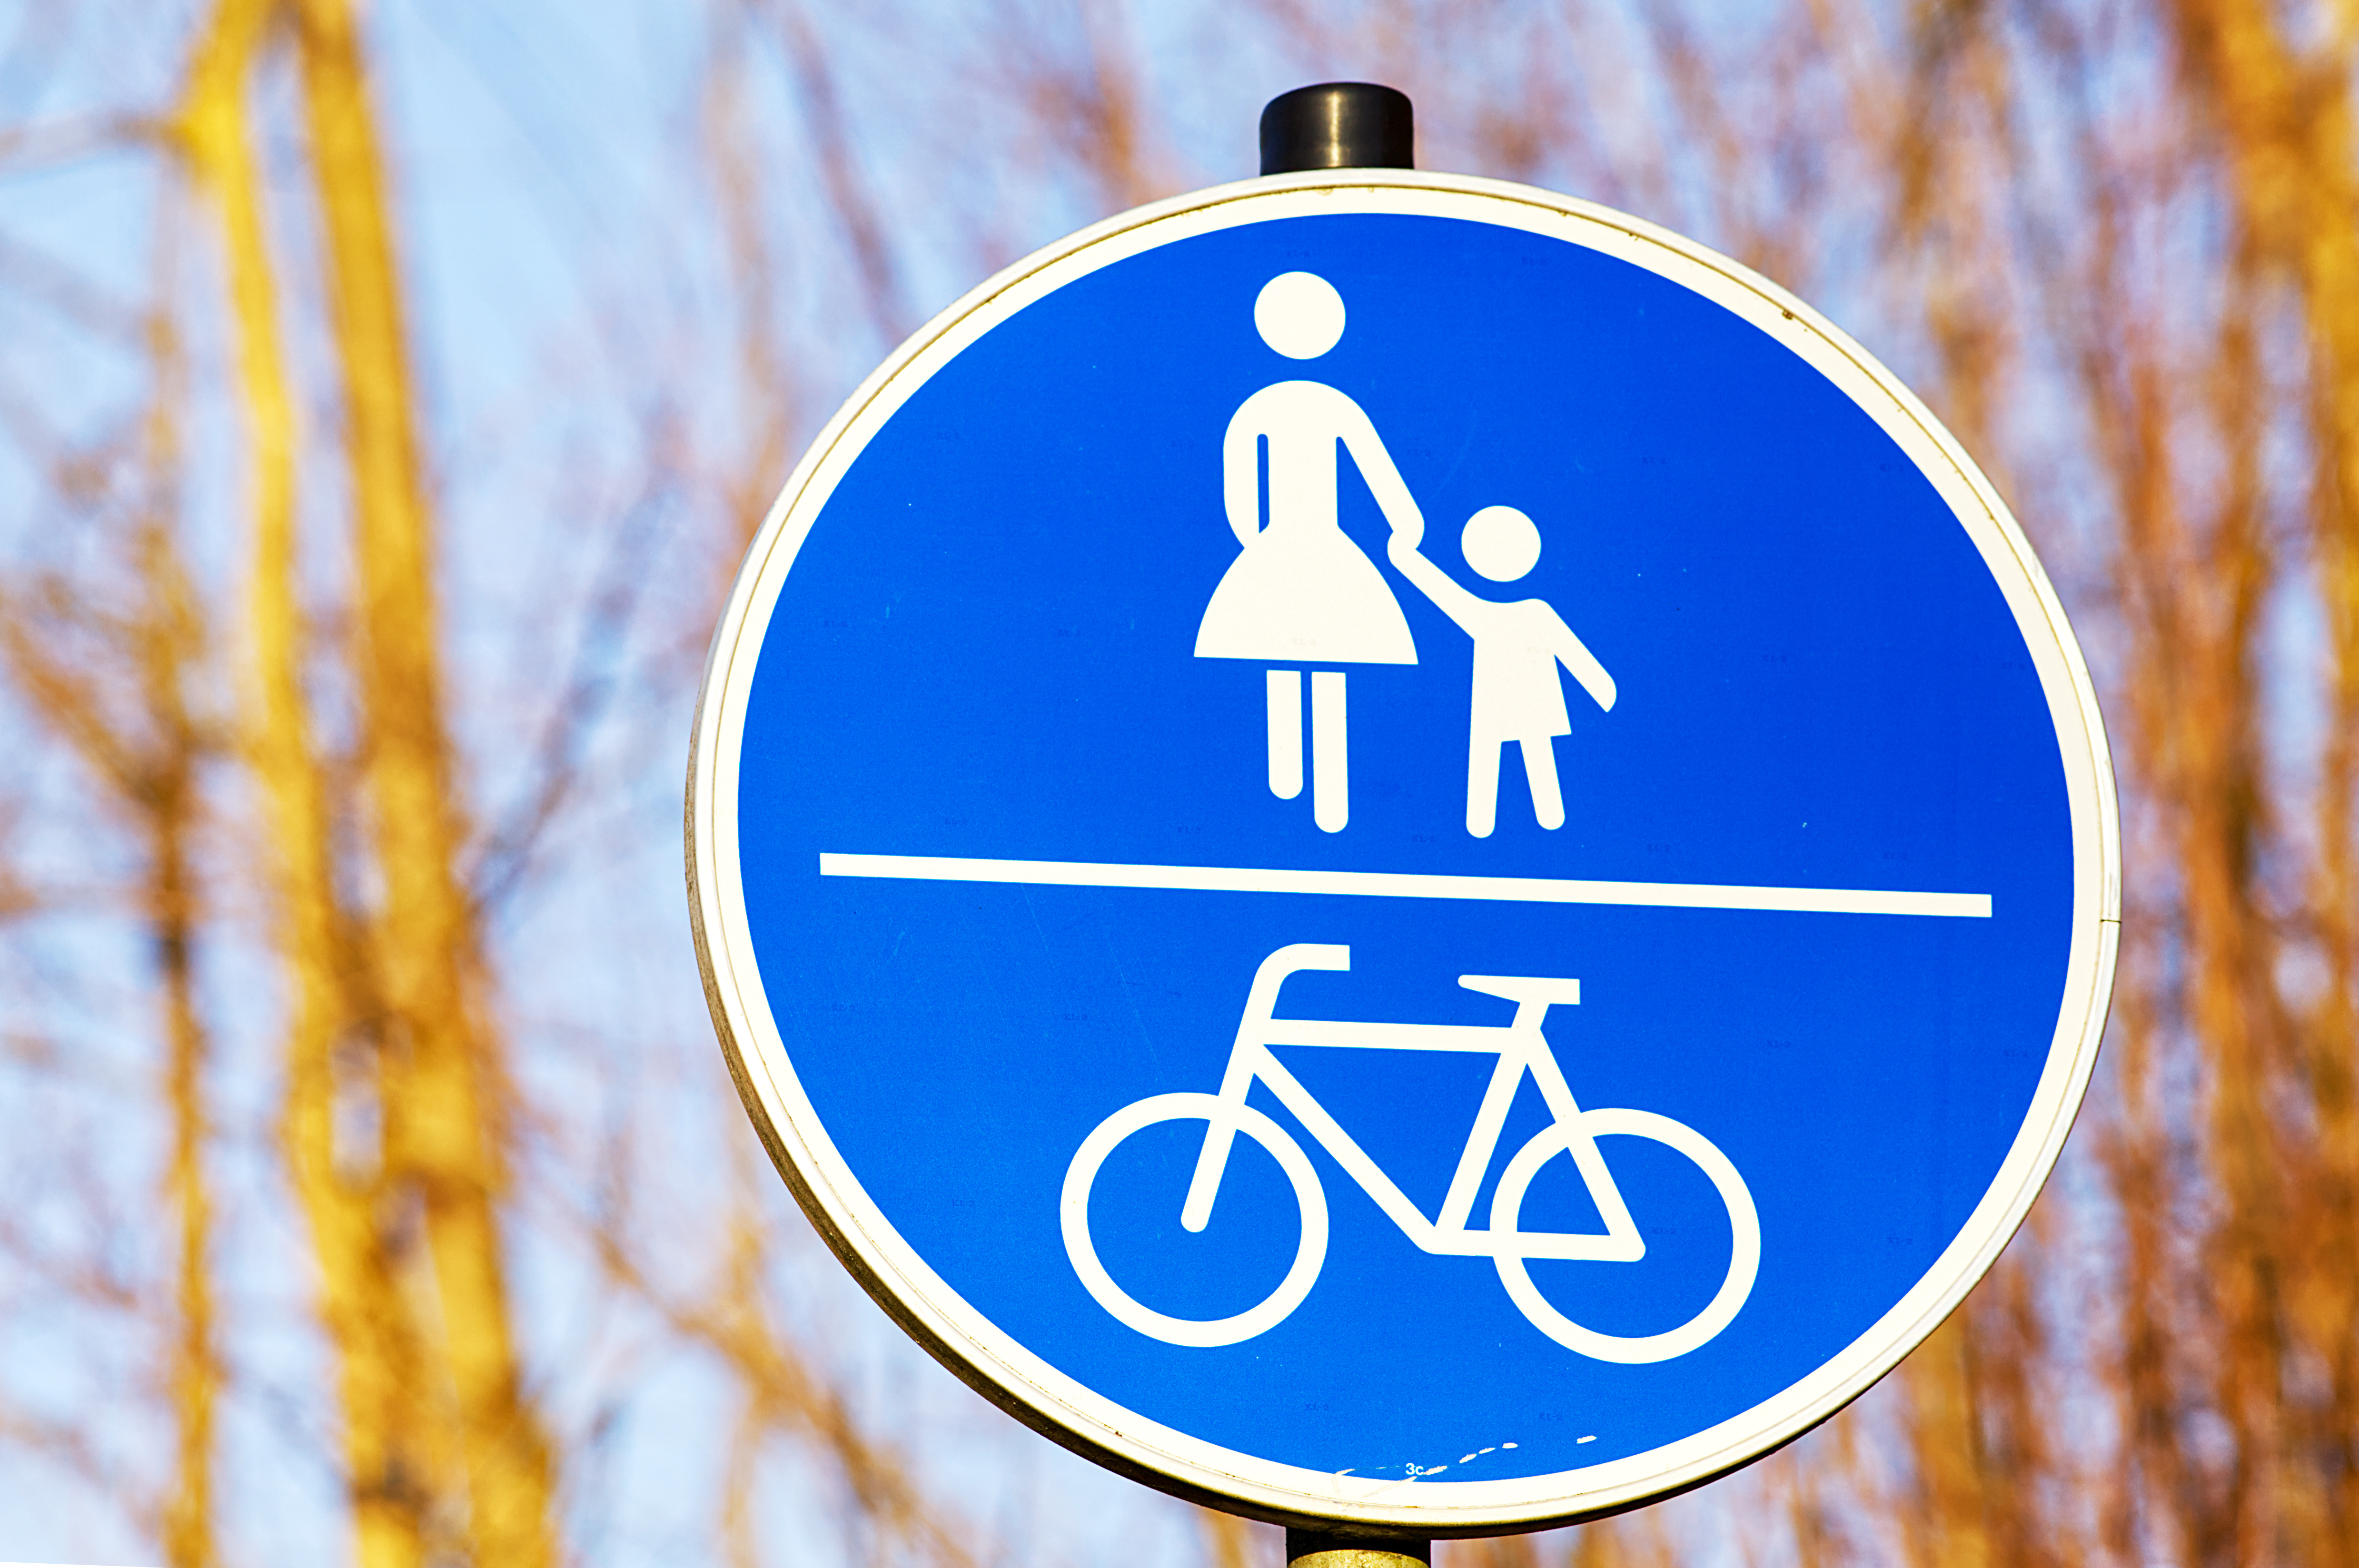 Zu sehen ist ein blaues Verkehrsschild, auf dem Fußgänger und ein Fahrrad abgebildet sind, die durch eine horizontale Linie getrennt werden.